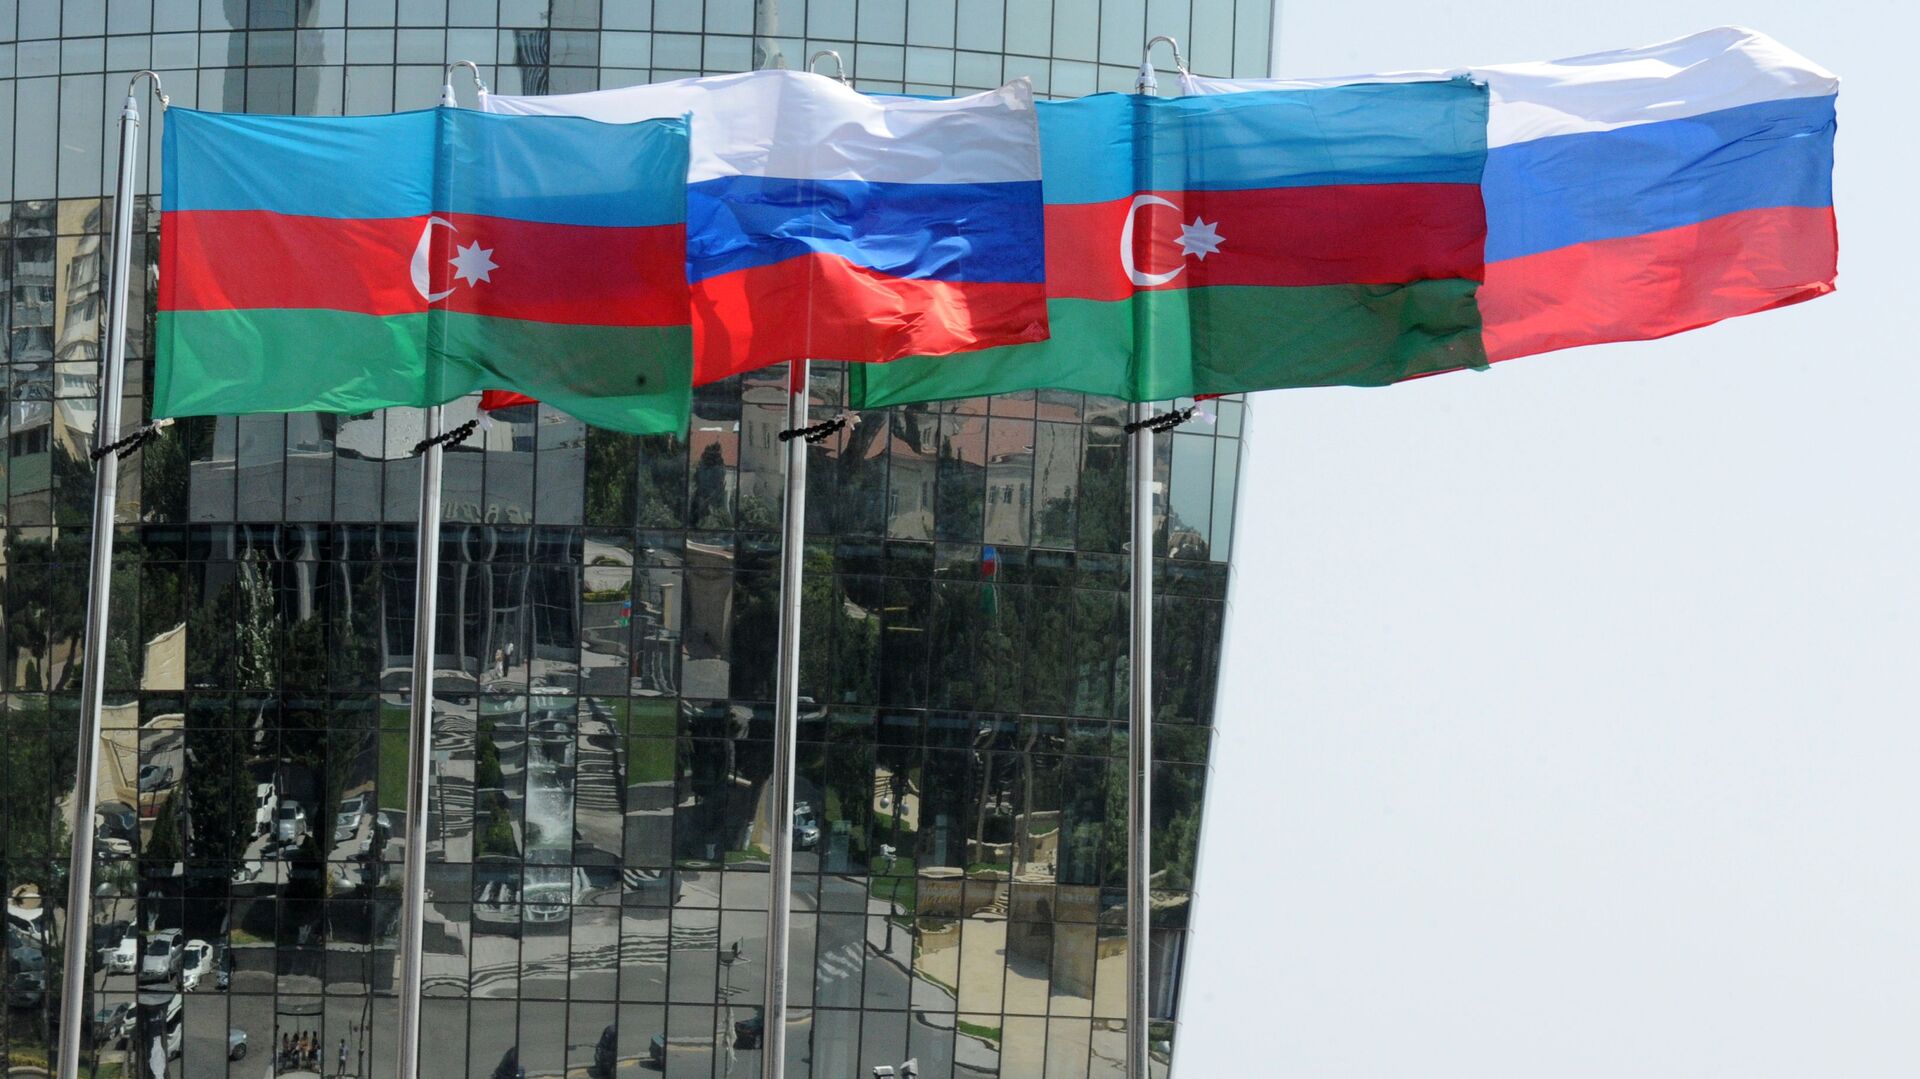 Национальные флаги России и Азербайджана на фоне фасада одной из башен Башни Пламени (Flame Towers) в Баку - Sputnik Azərbaycan, 1920, 09.07.2021